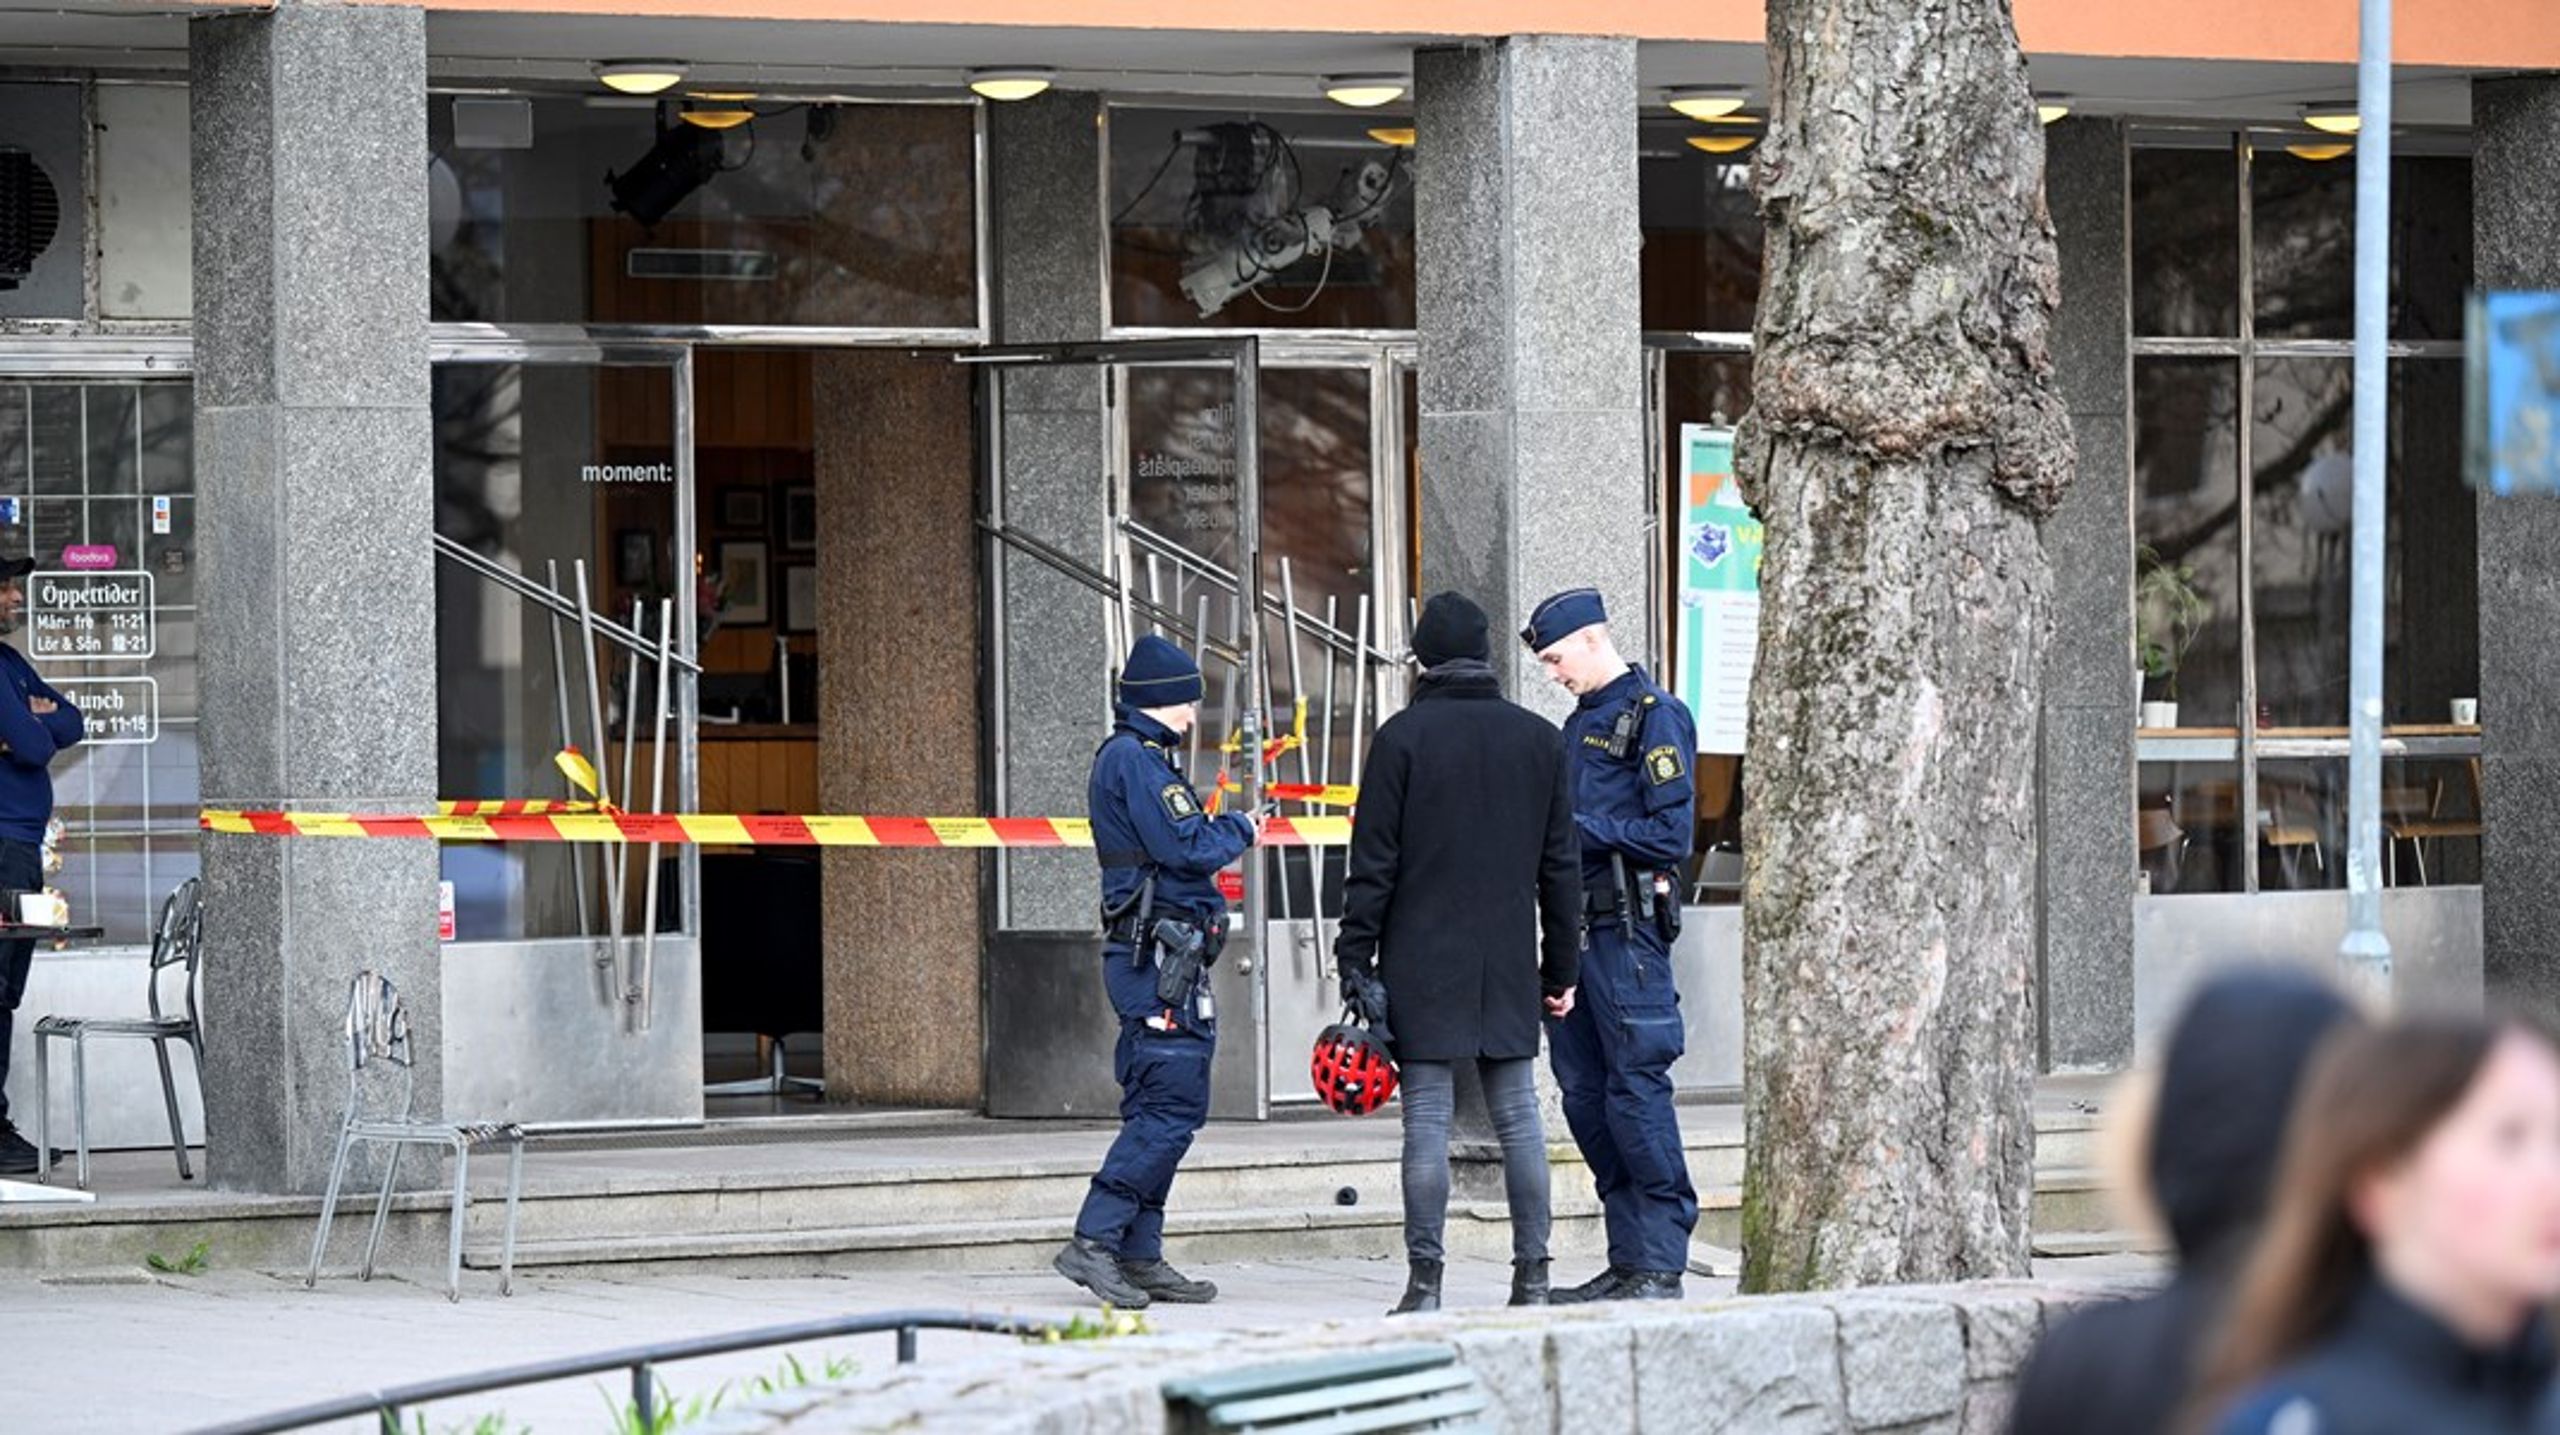 Det var på teatret Moment i Stockholm at det voldelige angrepet inntraff onsdag kveld.&nbsp;